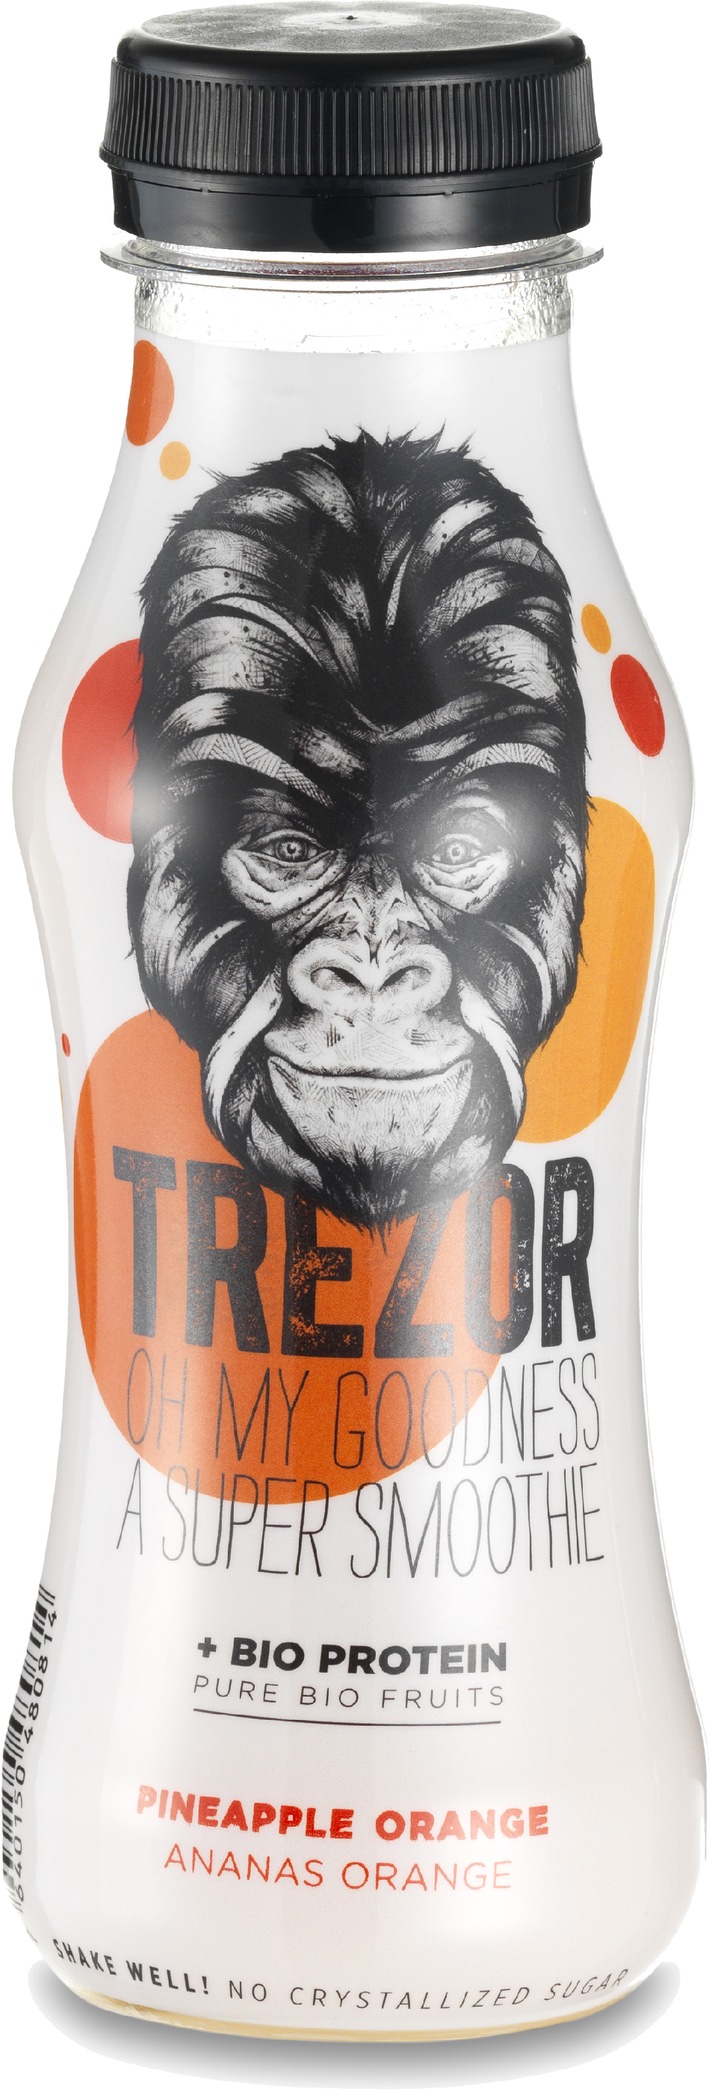 La petite et innovante entreprise Suisse Beodrinx lance sa dernière trouvaille, TREZOR une boisson bio protéinée